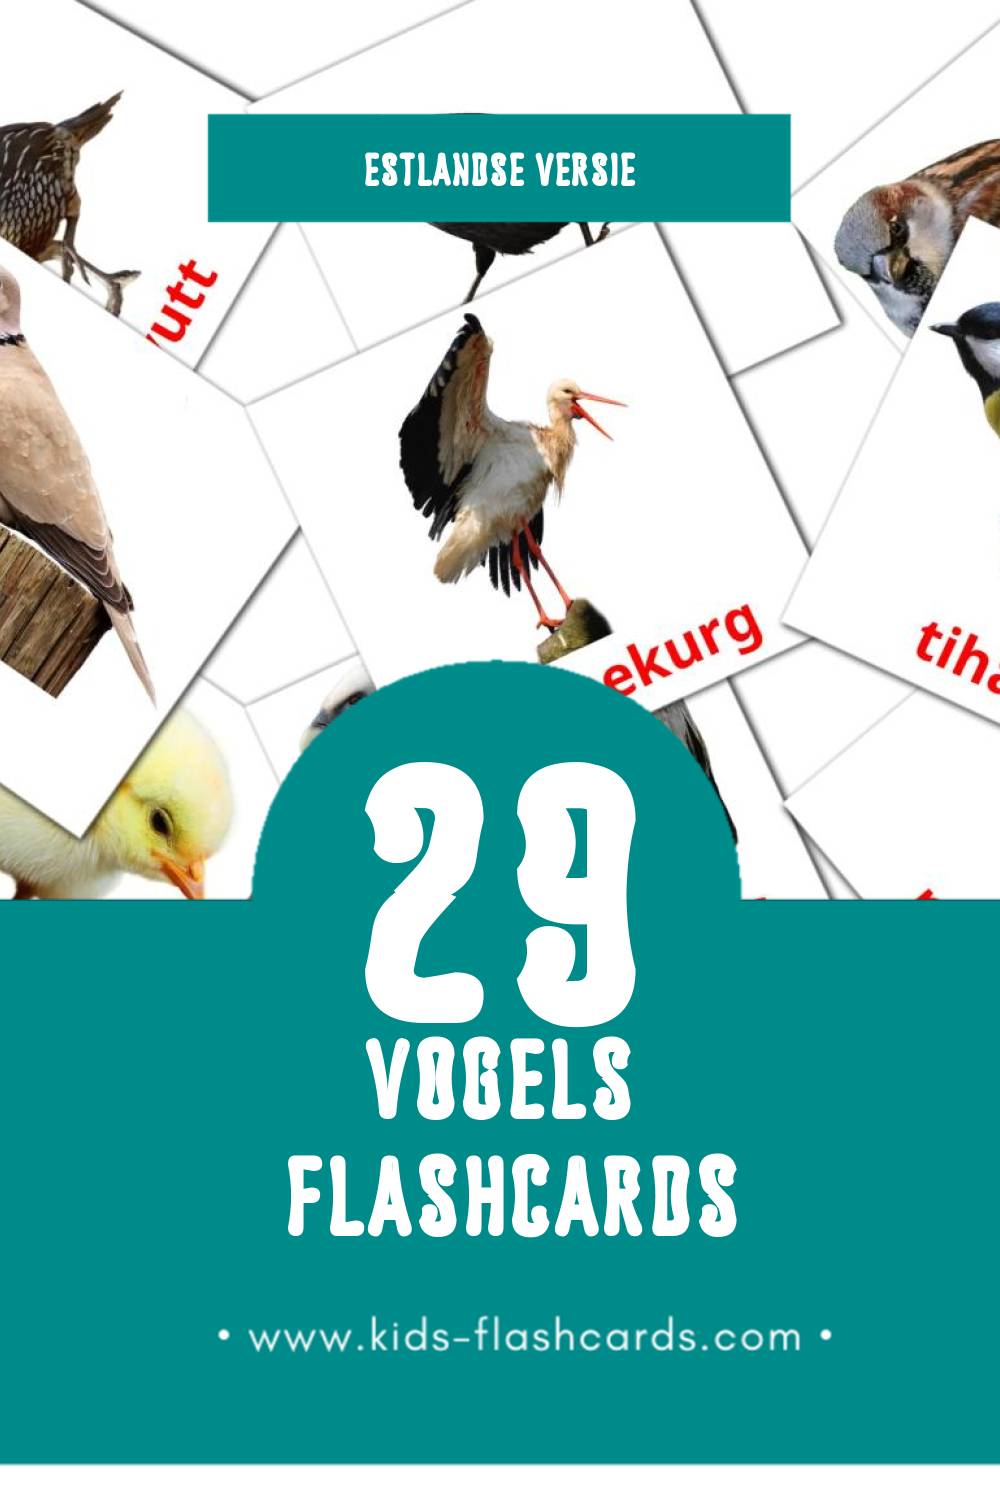 Visuele LINNUD Flashcards voor Kleuters (29 kaarten in het Estlands)